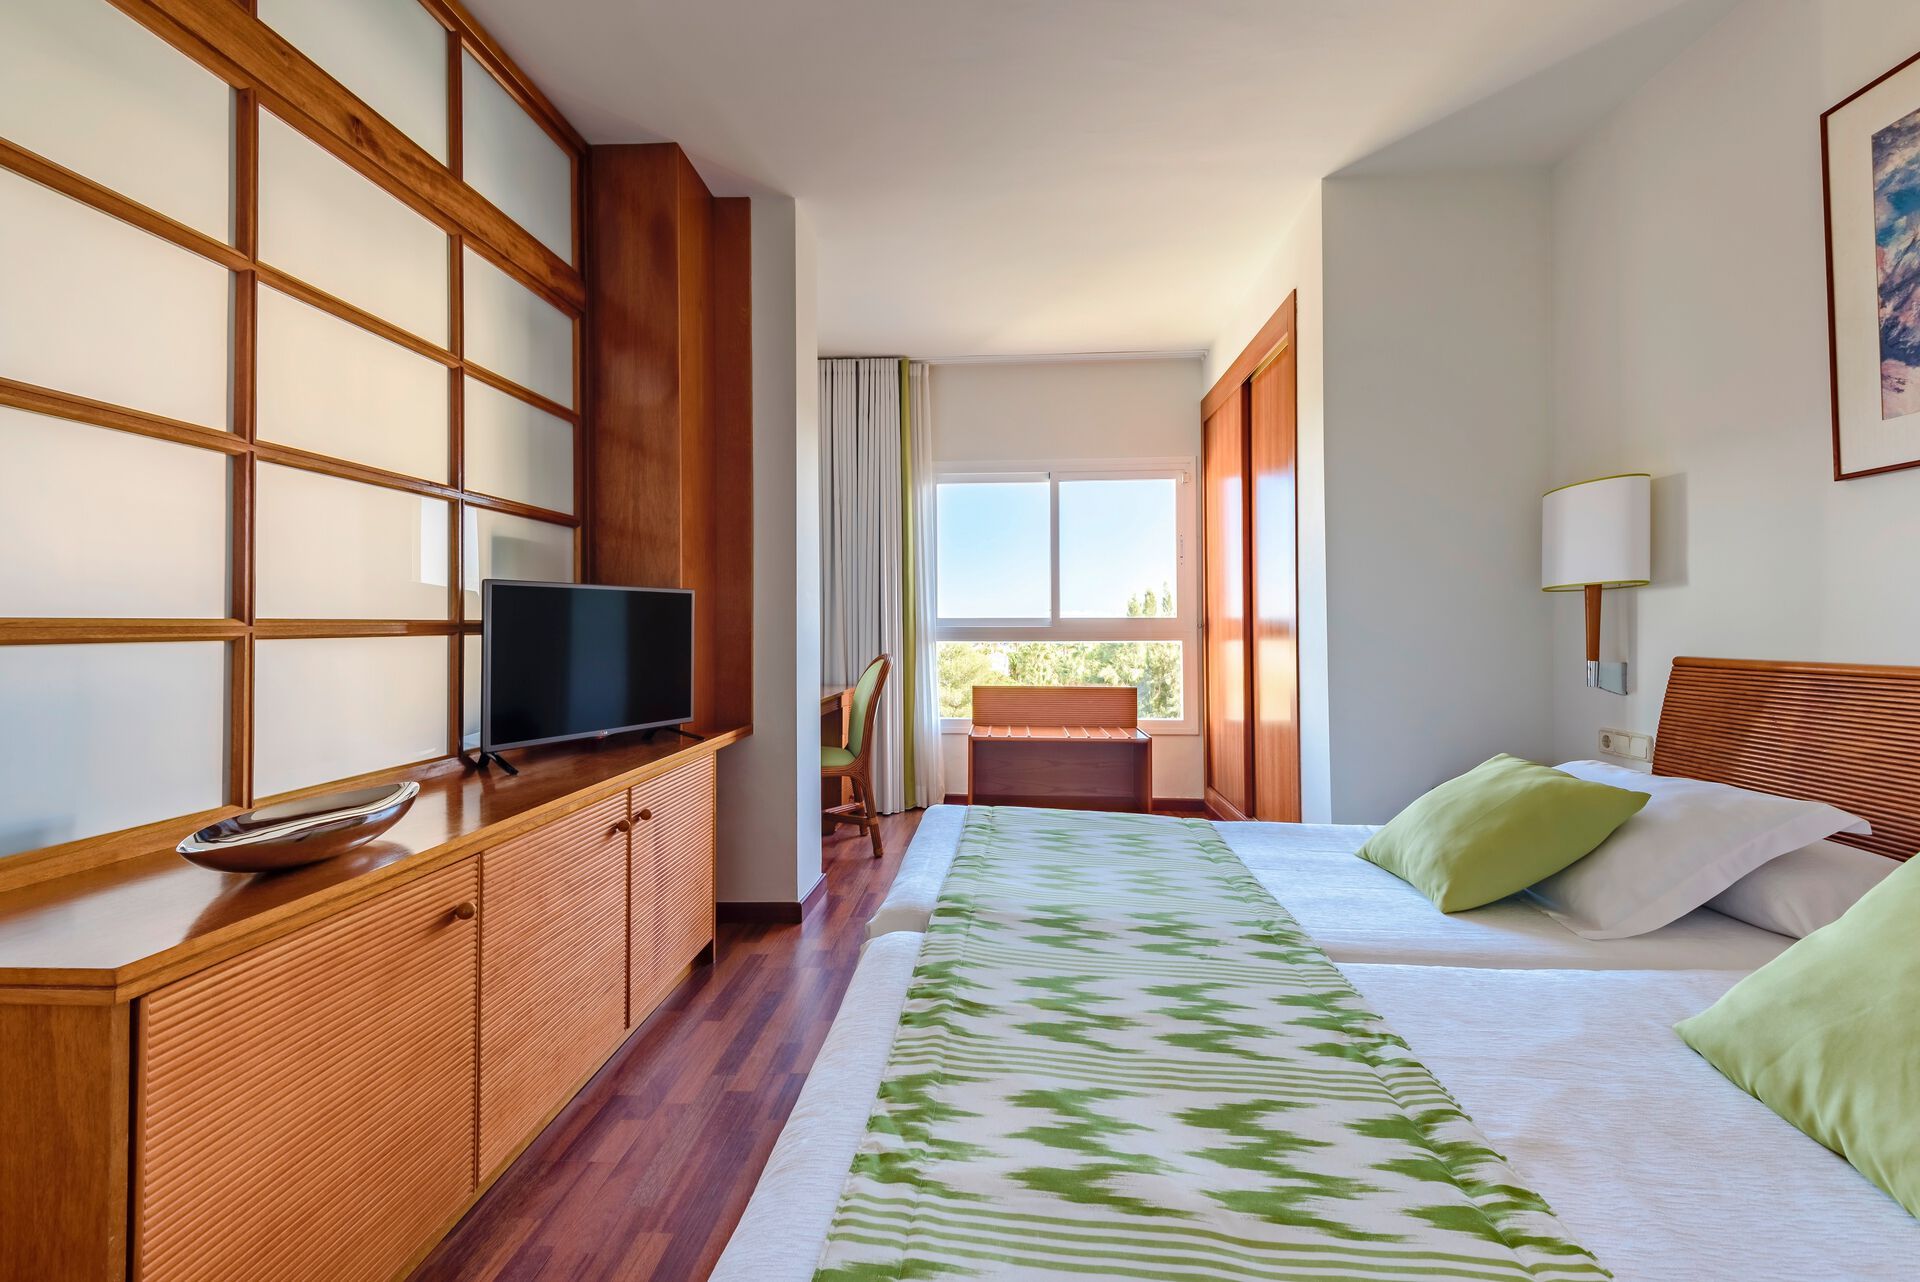 Espagne - Costa Dorada - Tarragone - Hotel Estival Park Salou Resort 4*